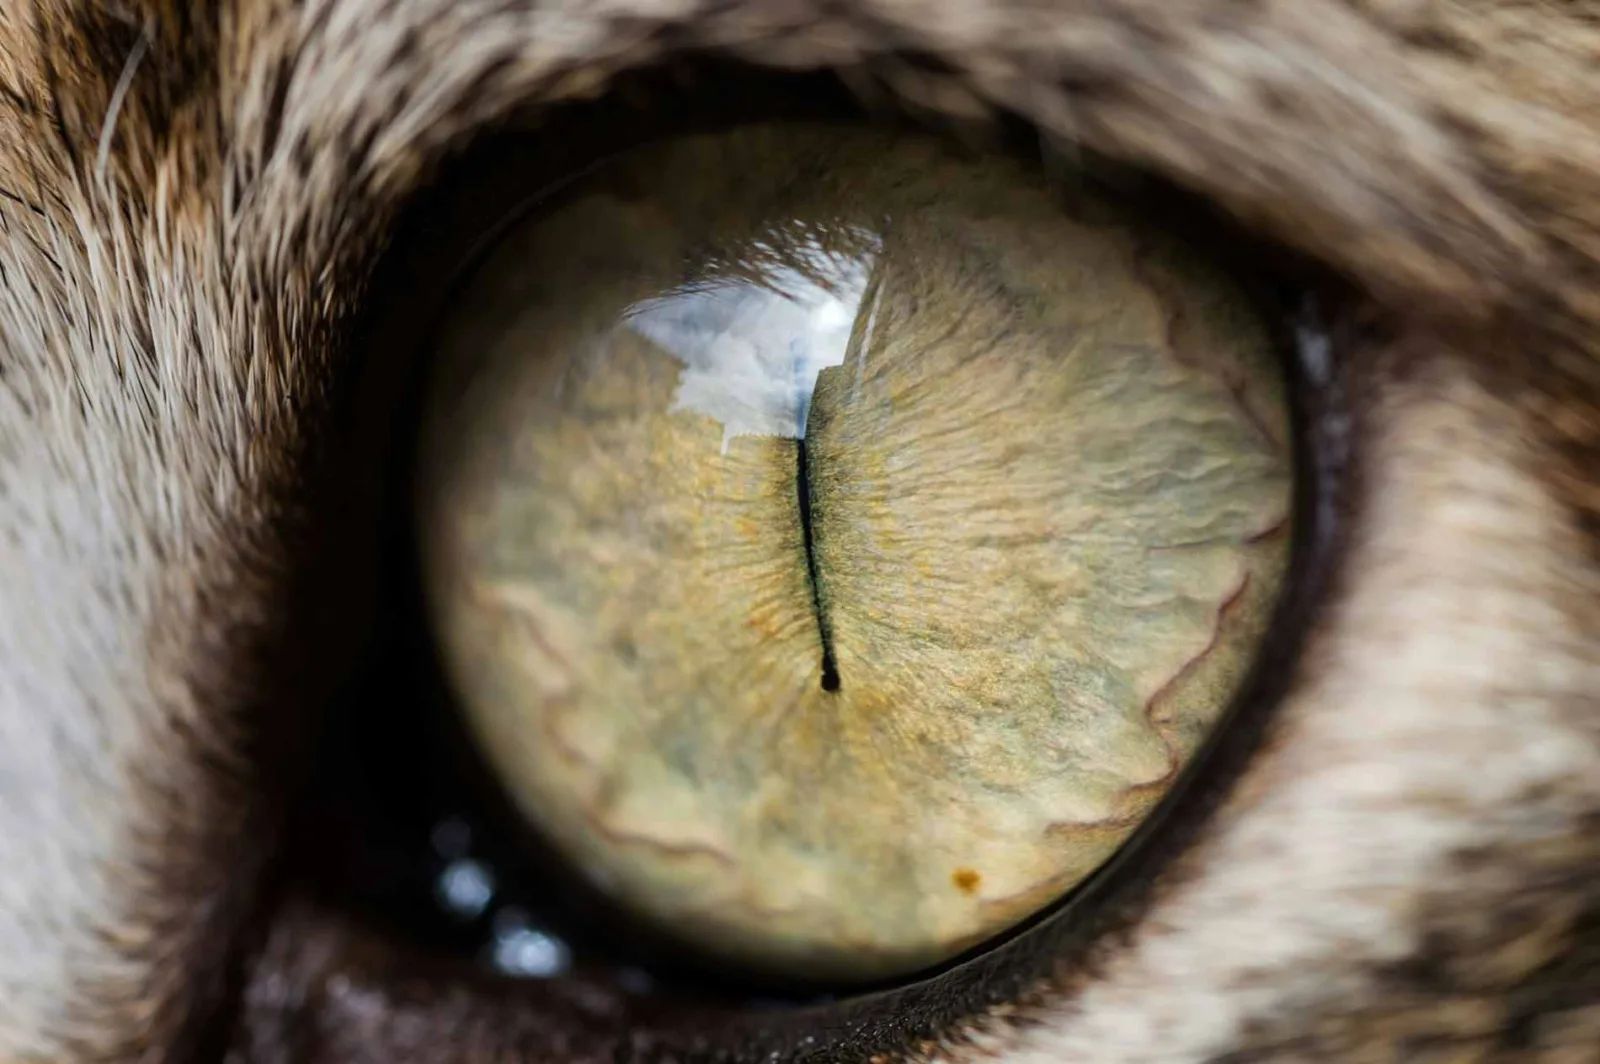 Eine Nahaufnahme eines Katzenauges, die die komplizierten Details der Iris zeigt. Die Iris hat eine Mischung aus gelben, braunen und grünen Farbtönen und eine vertikale, schlitzförmige Pupille. Das Auge reflektiert Licht und zeigt eine detaillierte Textur.